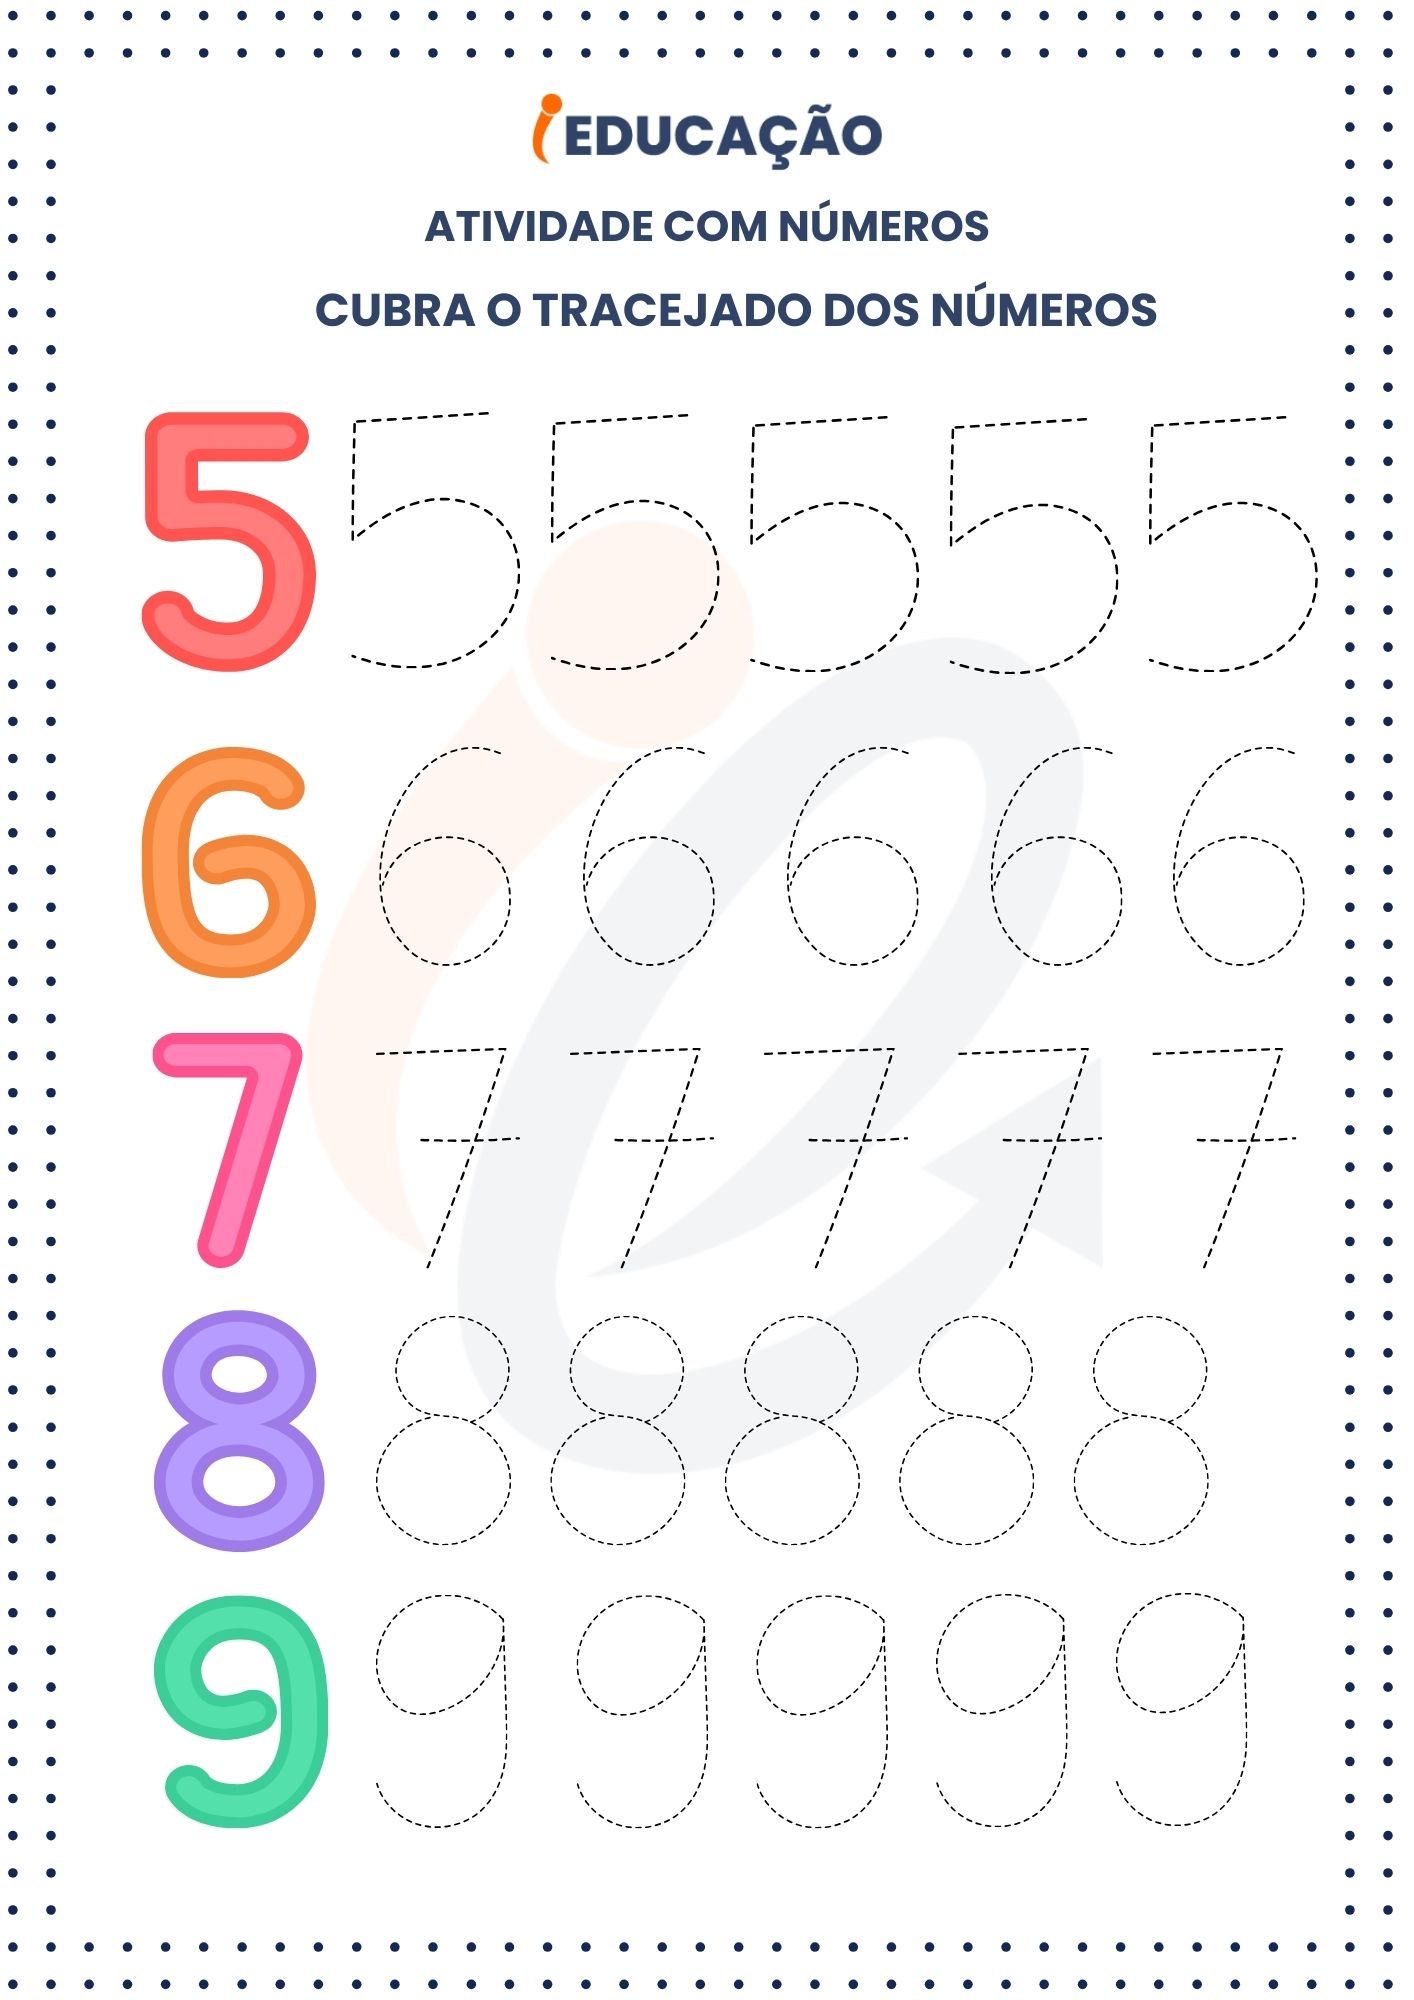 Atividades com números_ Tracejado dos Números 0-9 (2)